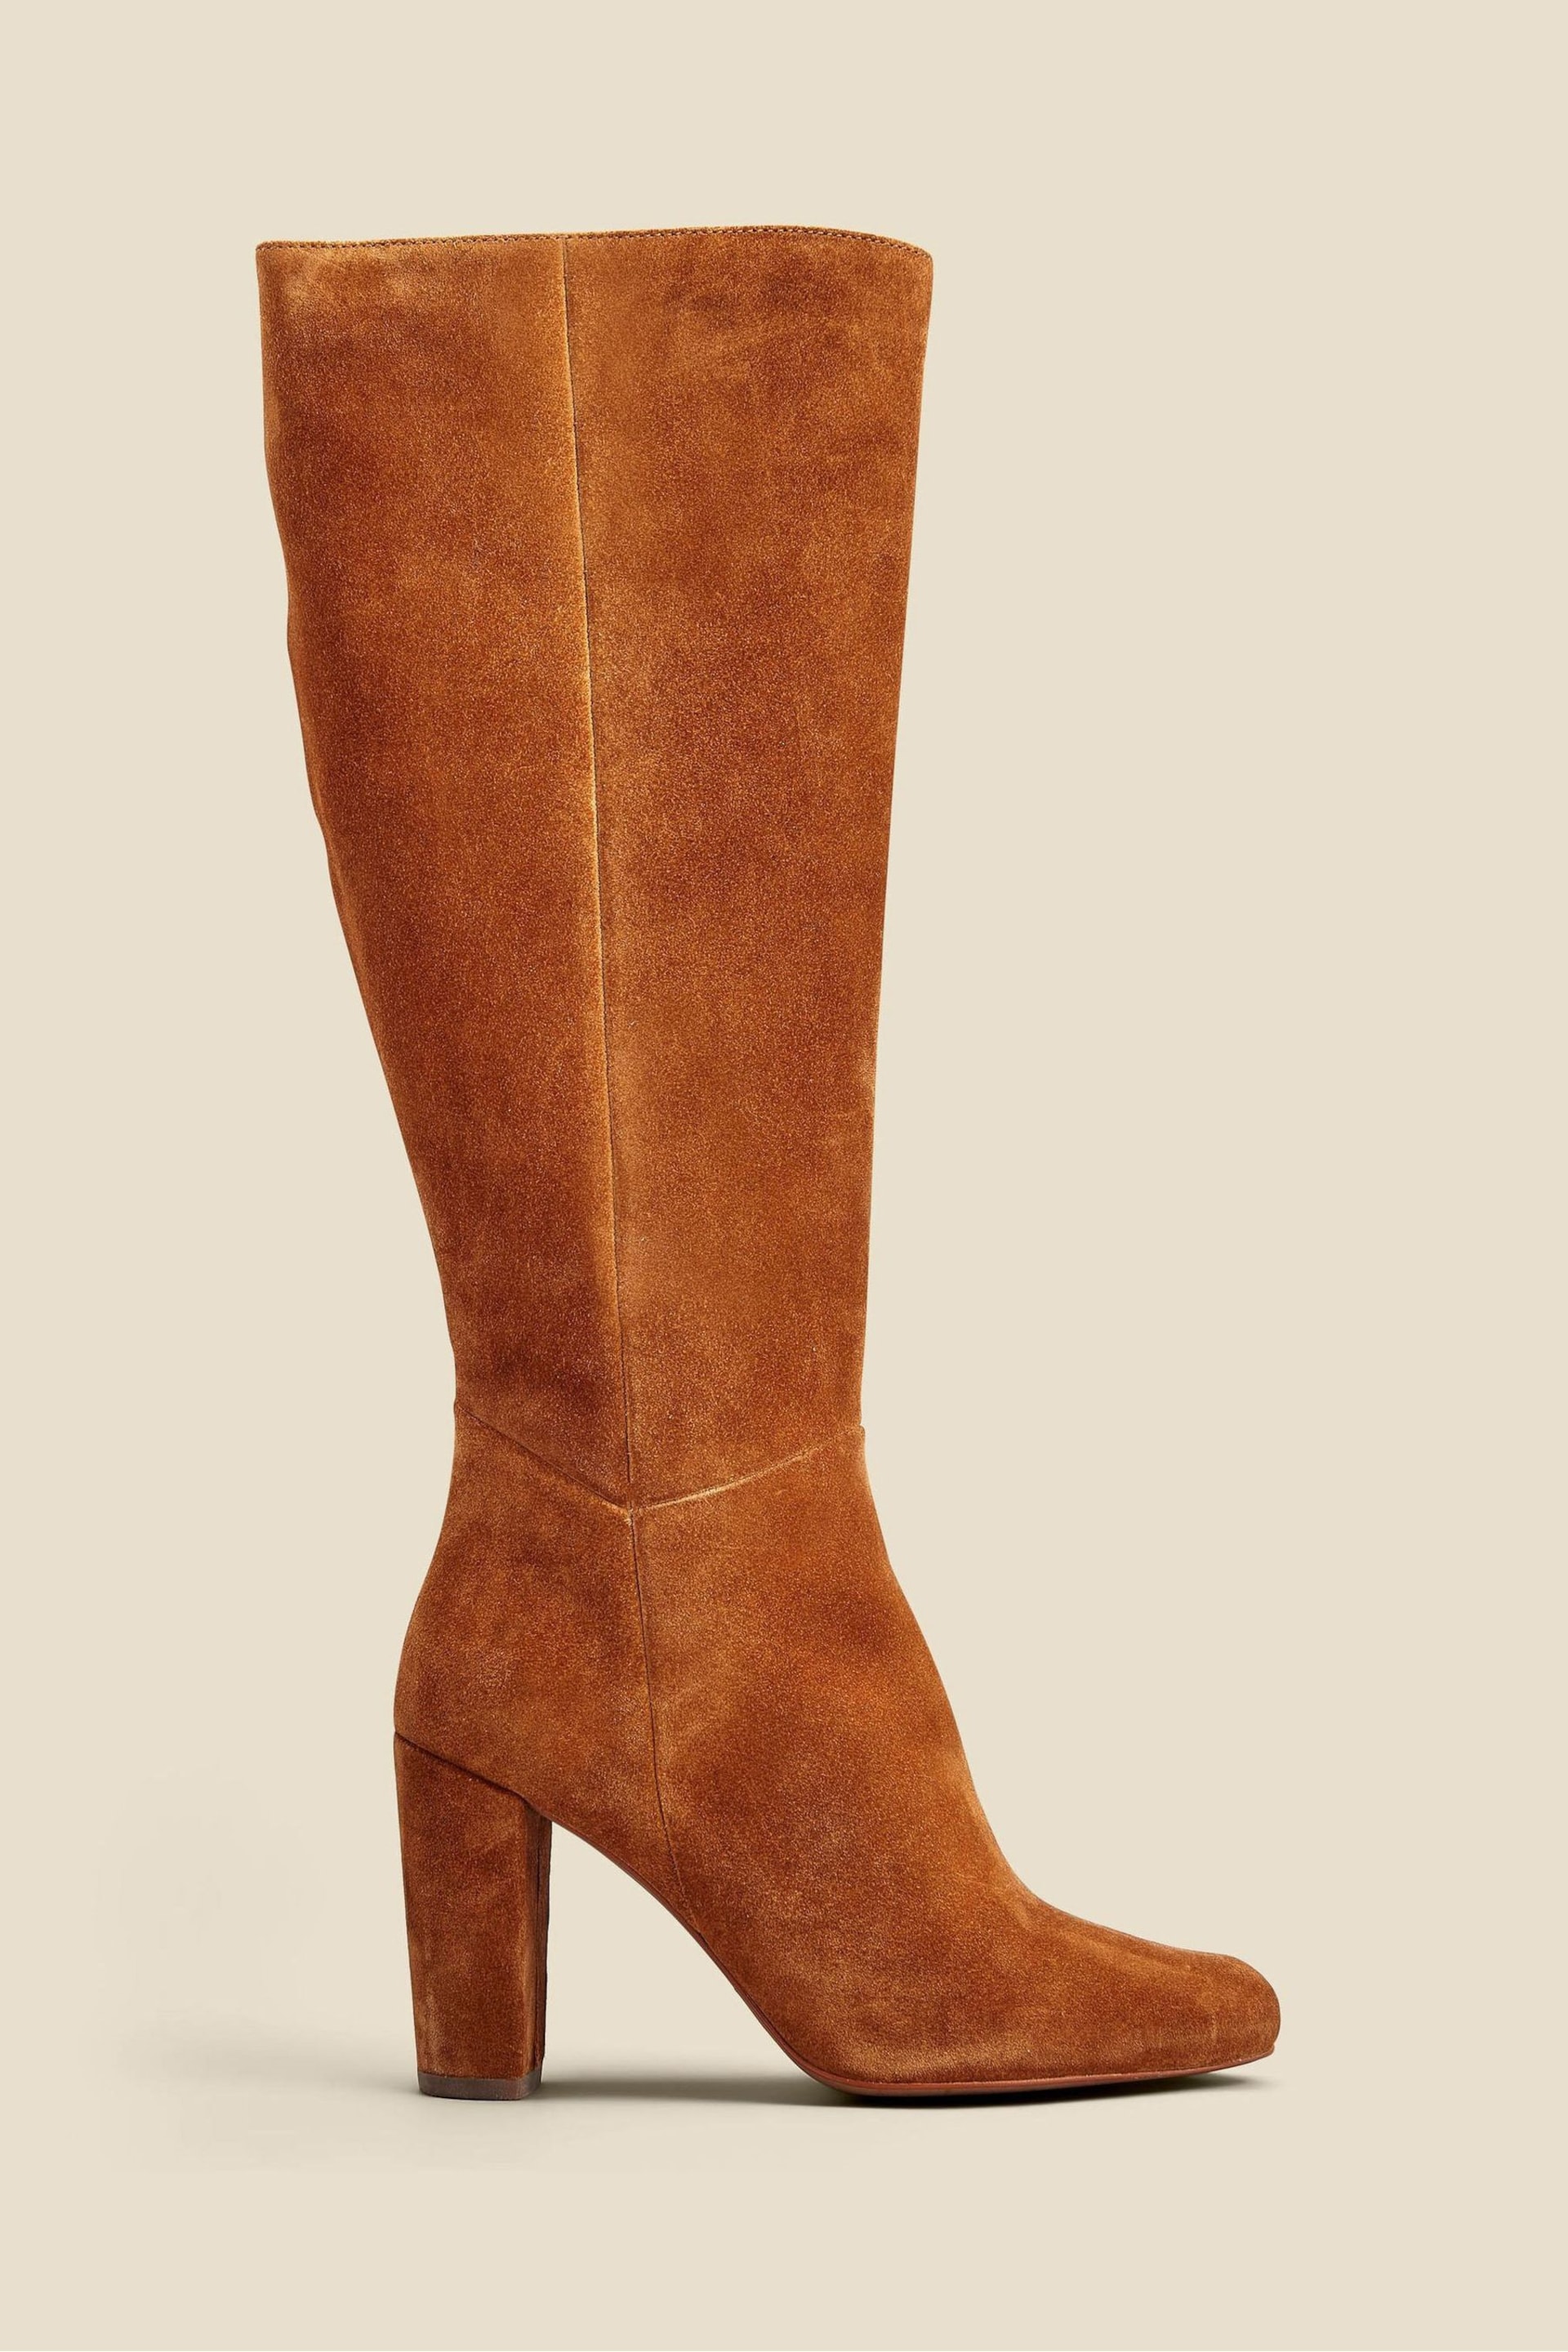 Sosandar Dark Brown Suede Zip Knee High Boots - Image 1 of 3